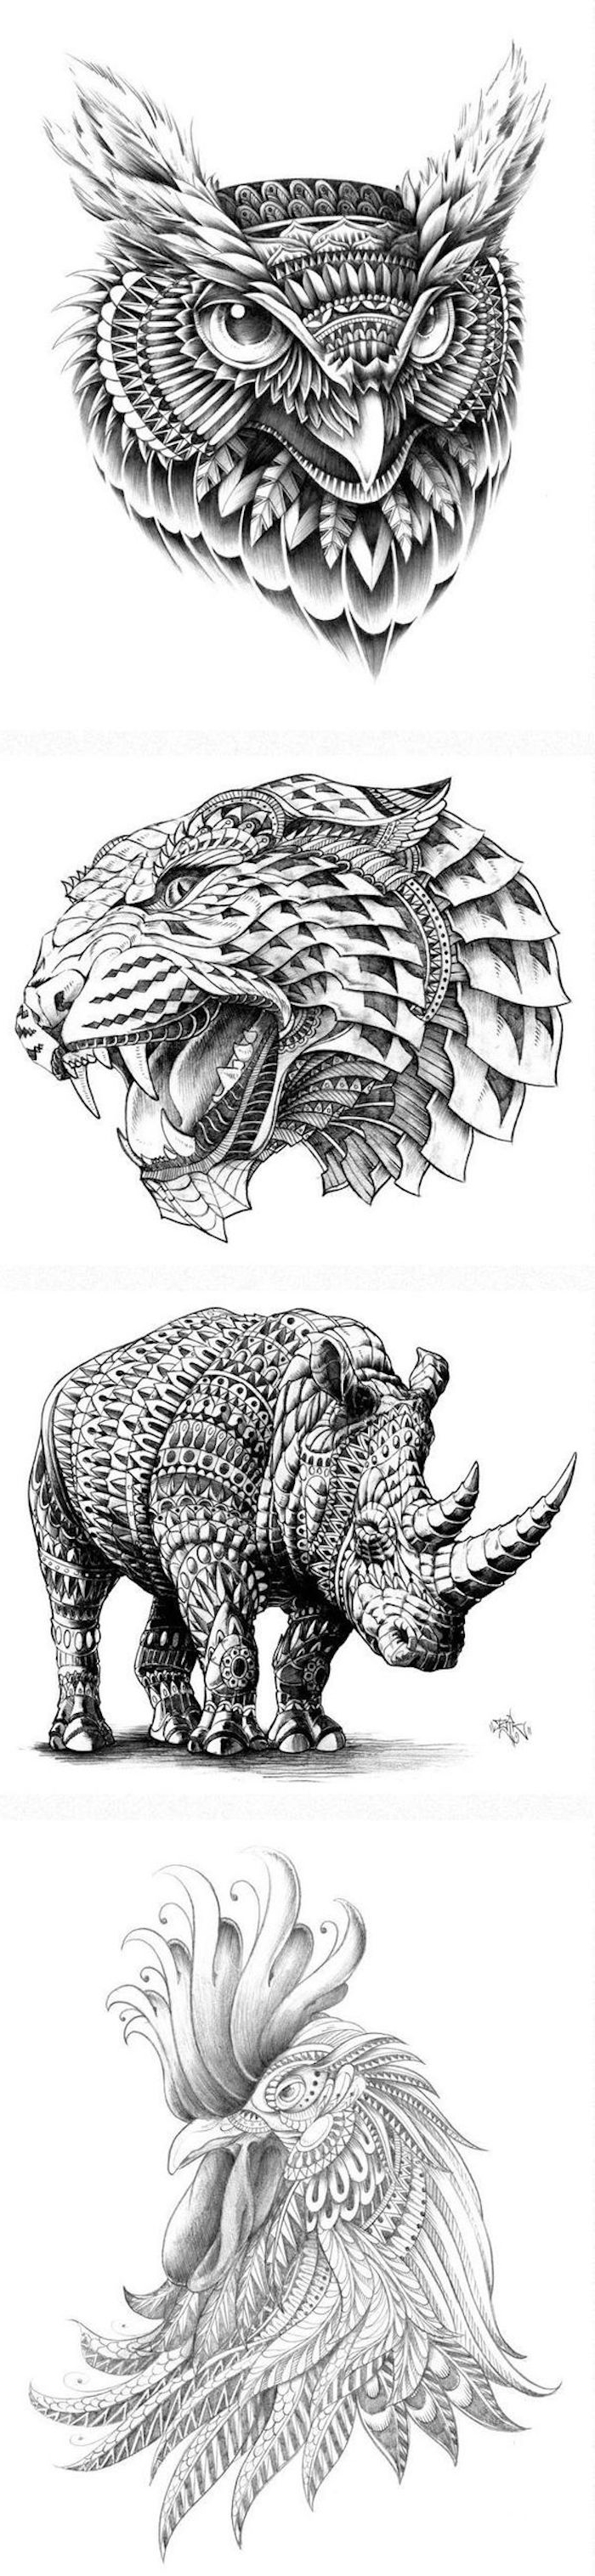 Här hittar du fyra idéer för stora svarta tatueringar - en uhu, en leopard, en noshörning och en tupp